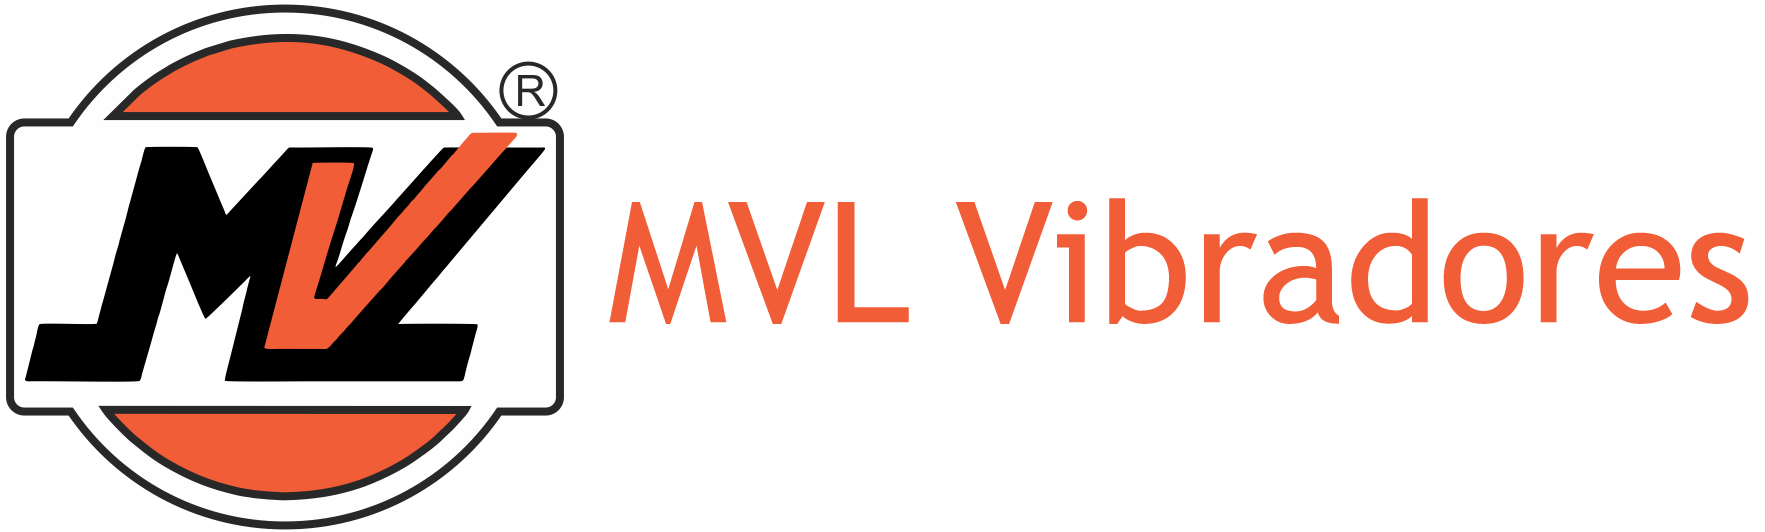 MVL Vibradores Industriais - Vibrar é a Solução